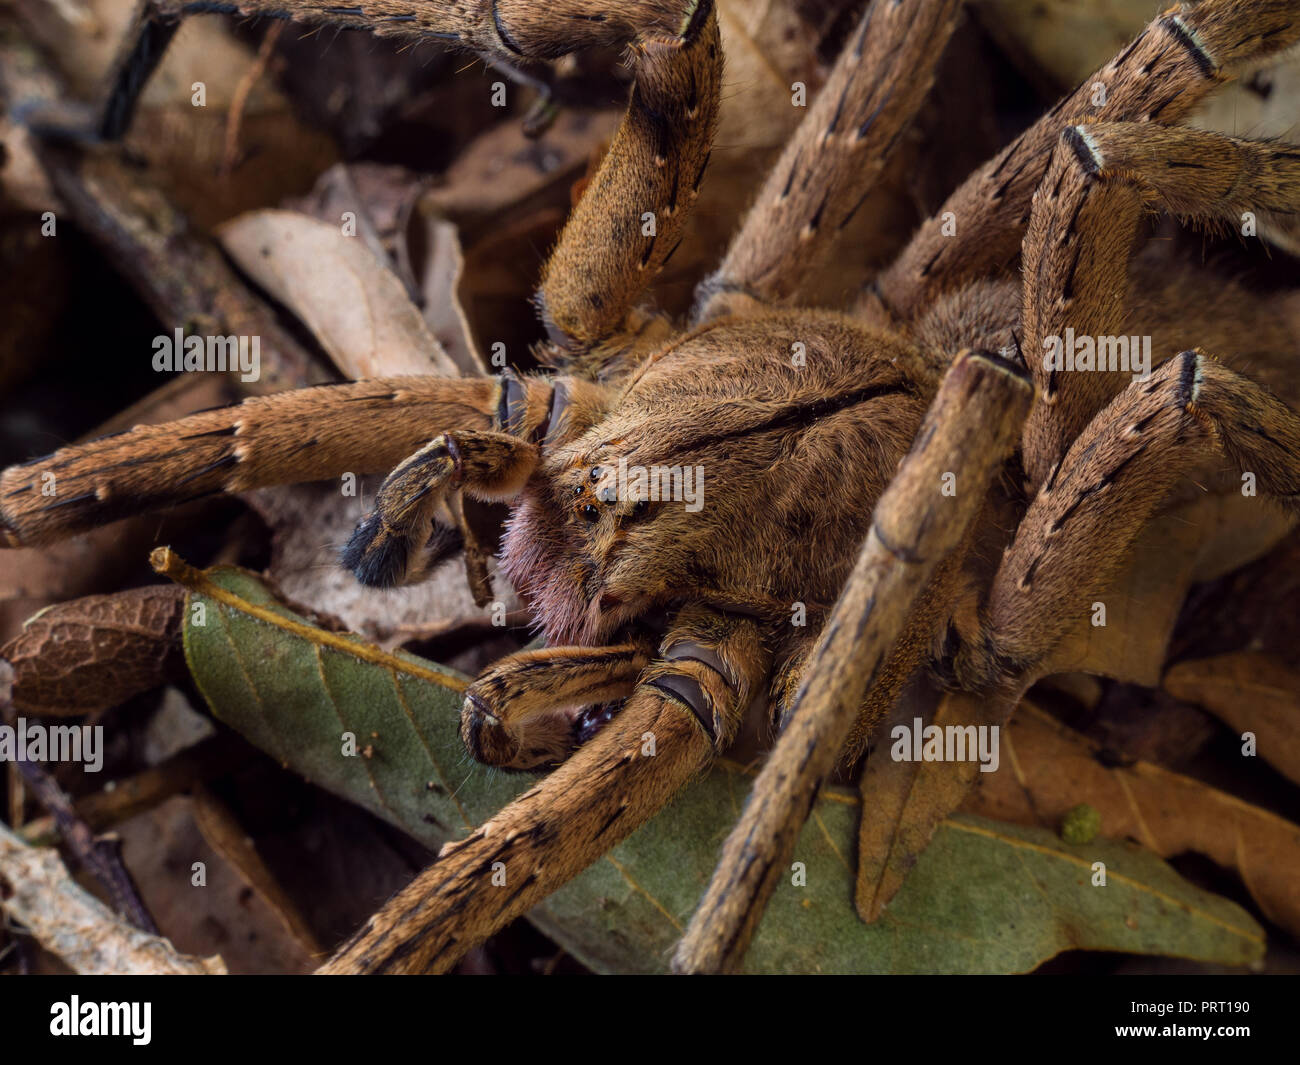 Phoneutria maschio (brasiliano ragno errante / armadeira), ragno velenoso sul suolo della foresta, dal sud-est del Brasile. Foto Stock